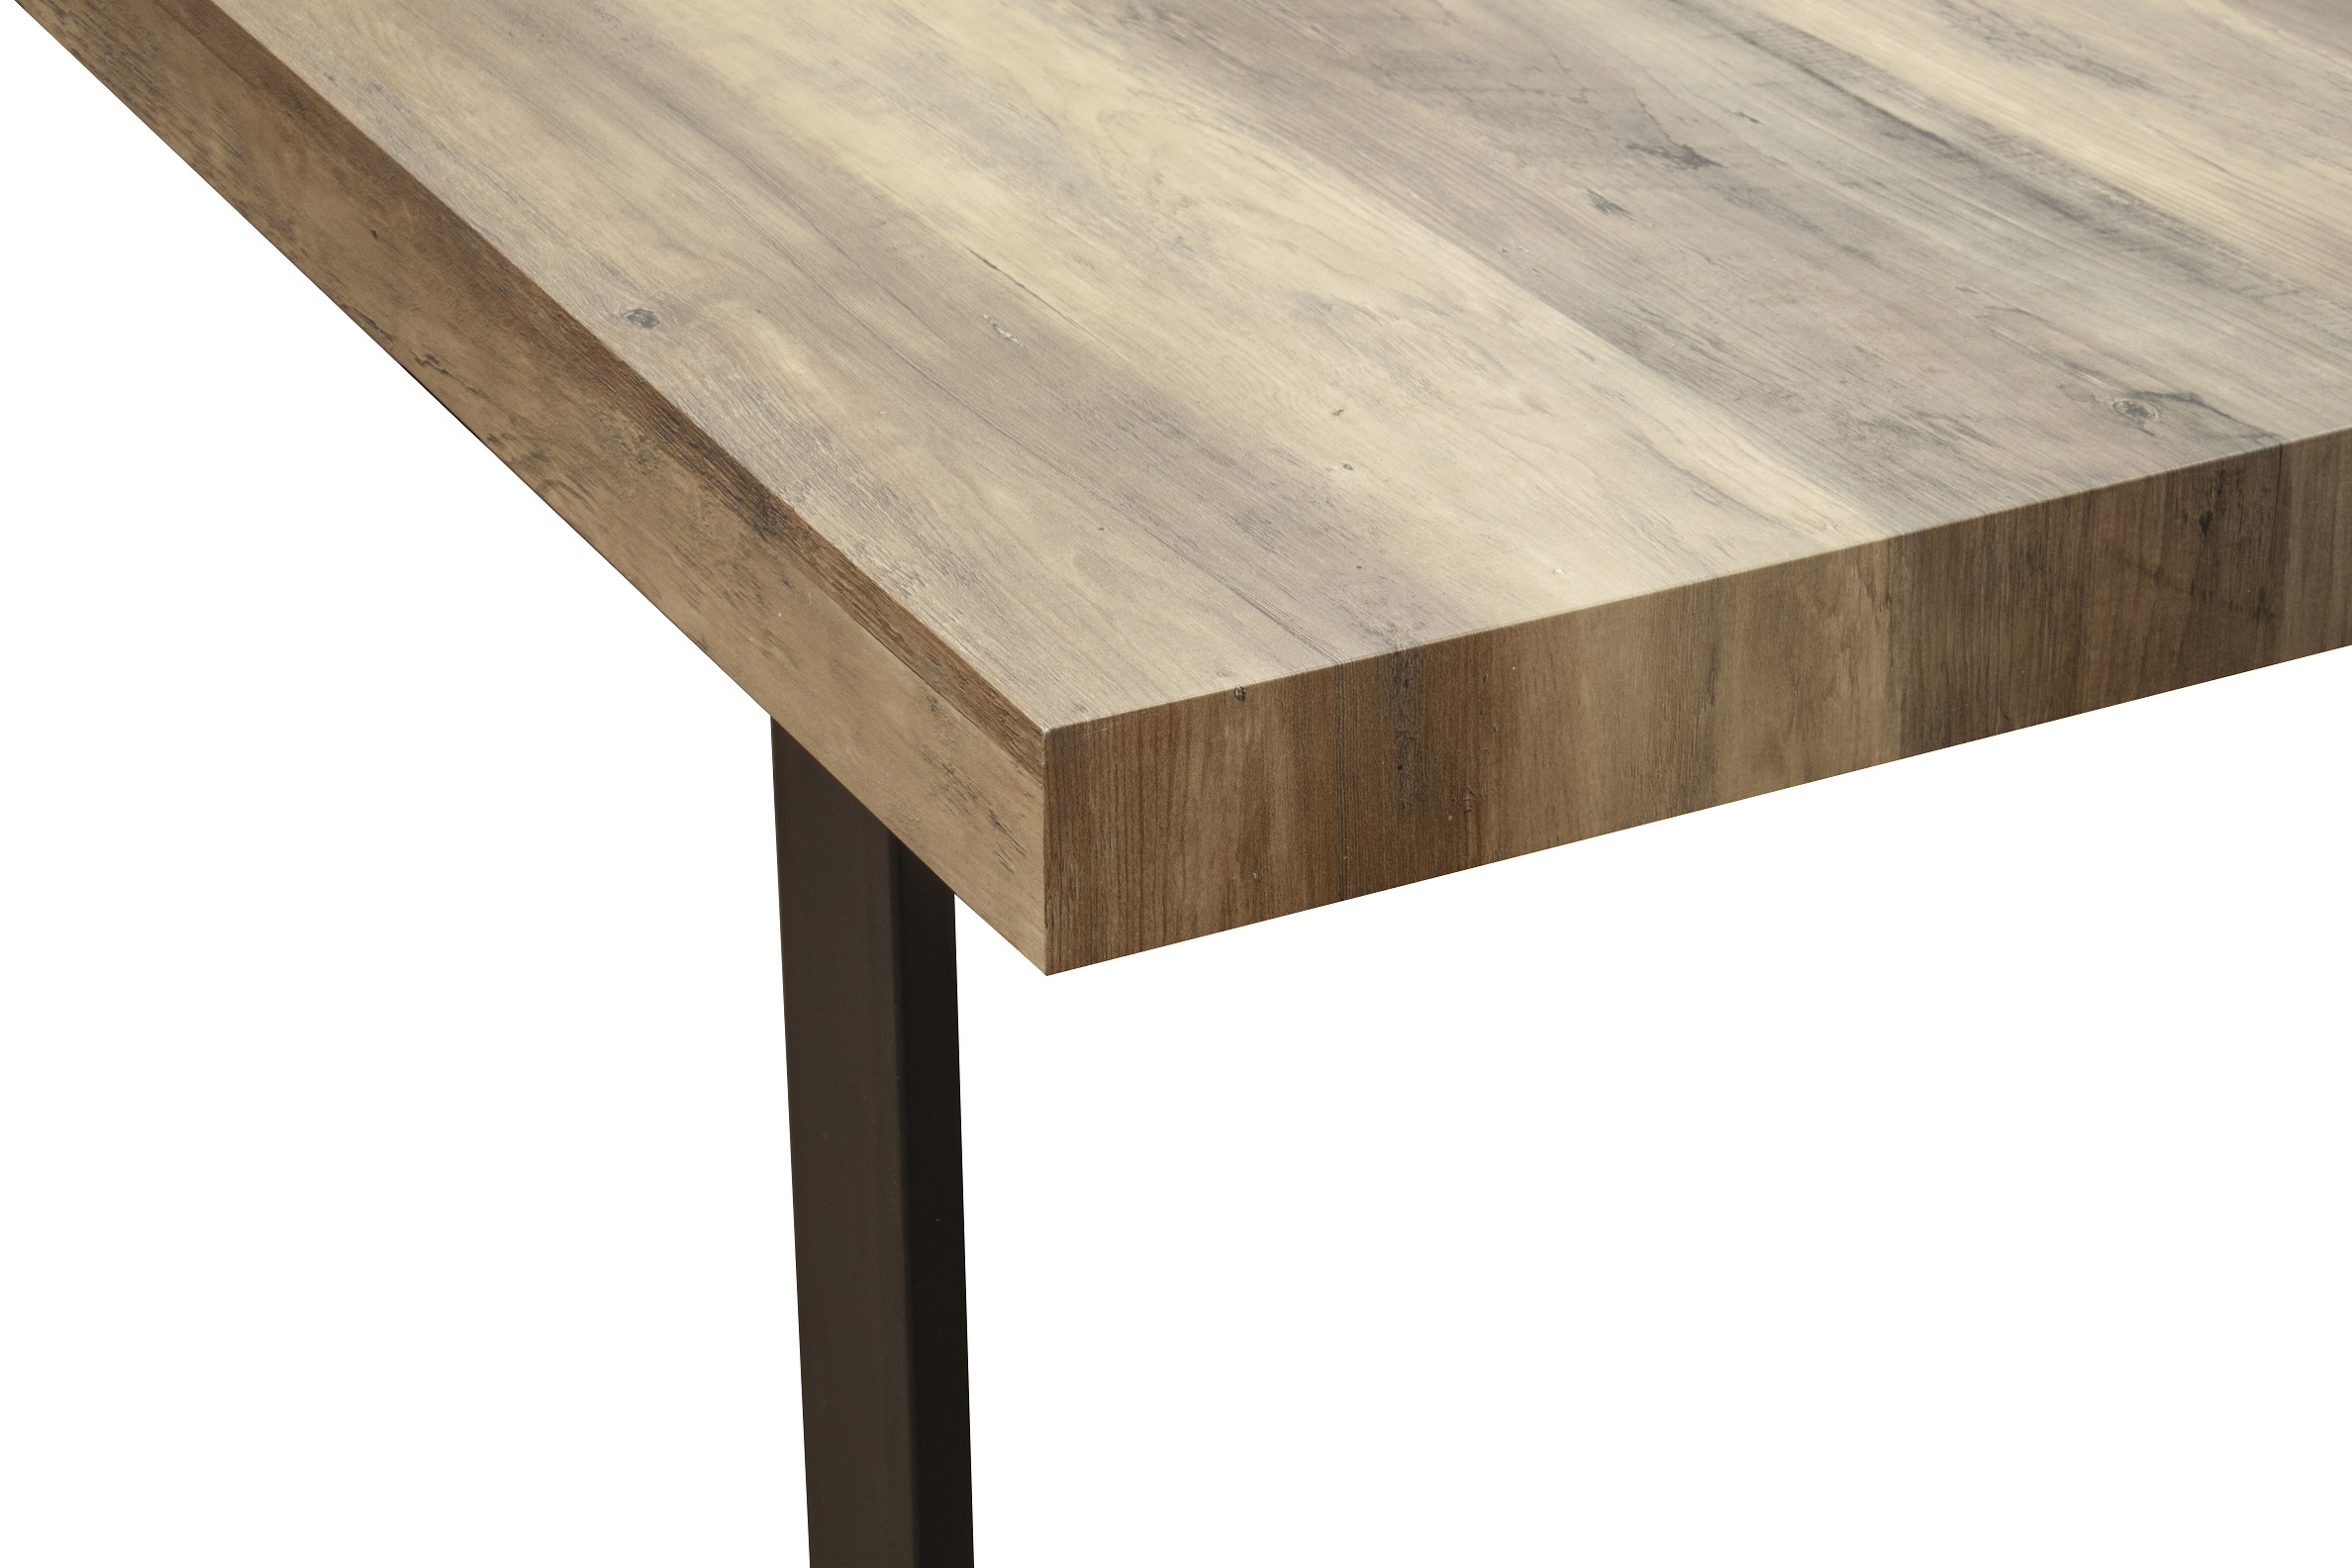 Esszimmertisch Esstisch Kufentisch Holztisch Tisch mit Tischplatte und Kufen - Akazie + Schwarze Kufen 160x90